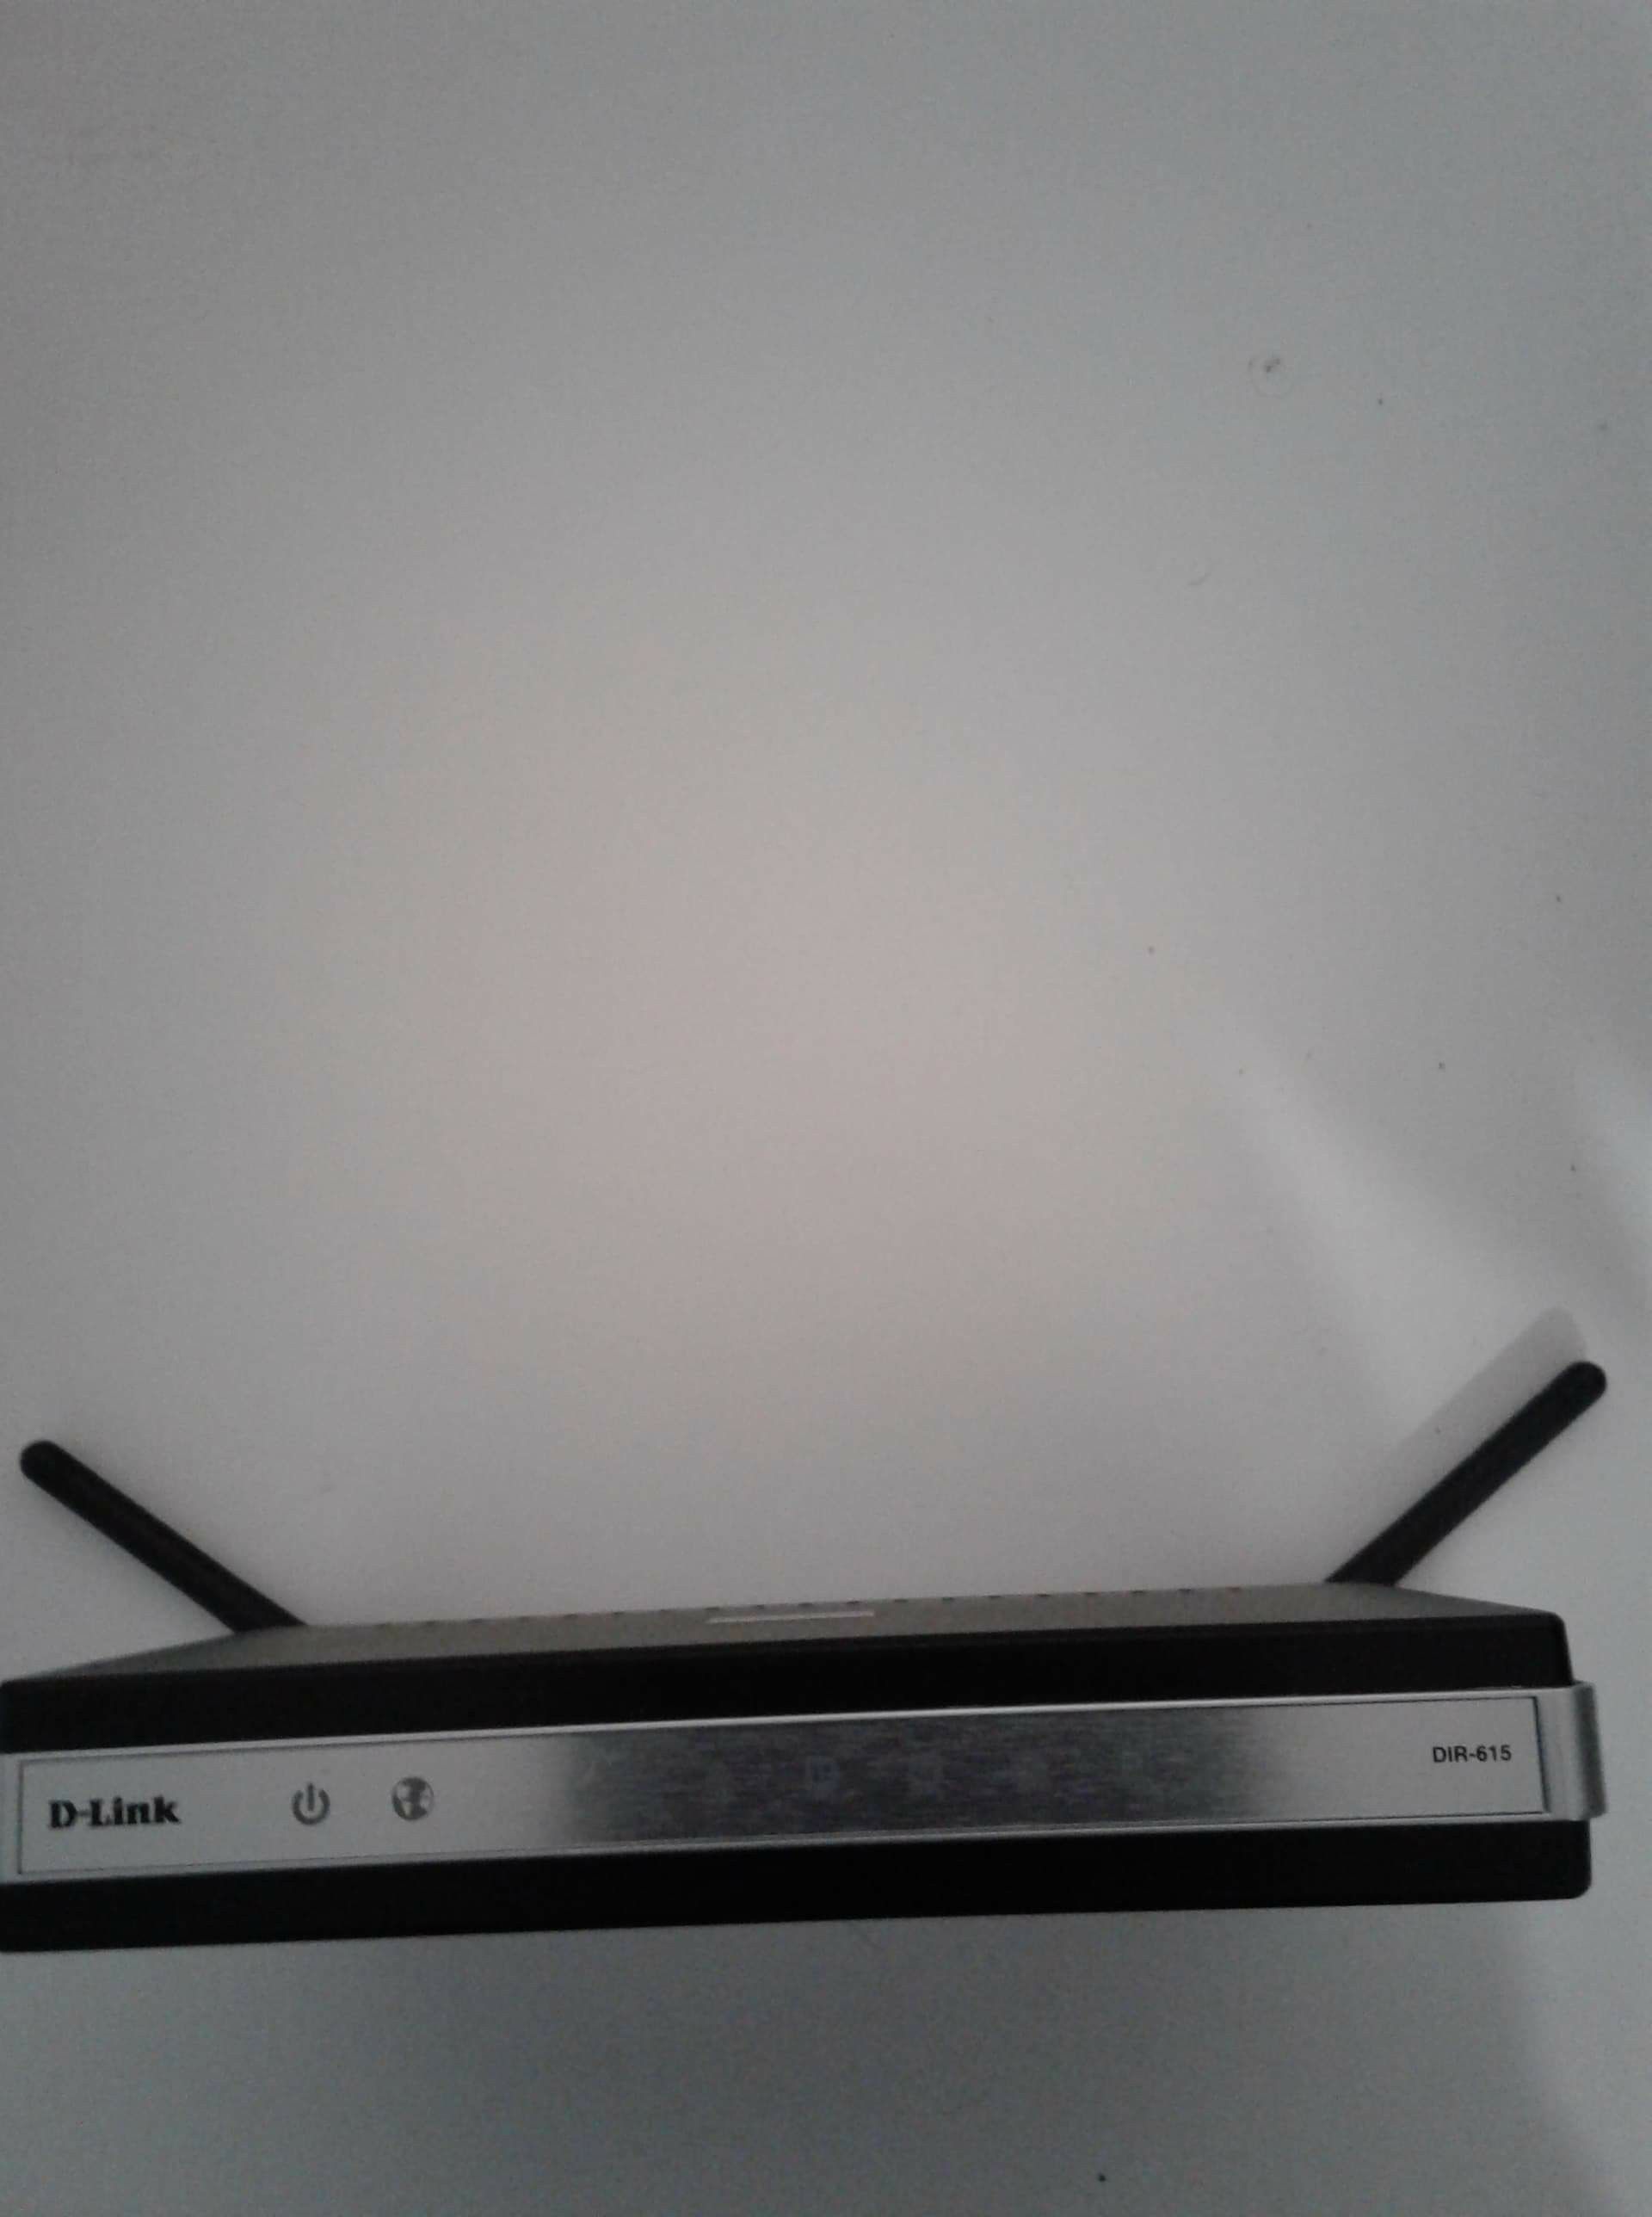 D-Link DIR-615 Wireless-N Router, 4-Port